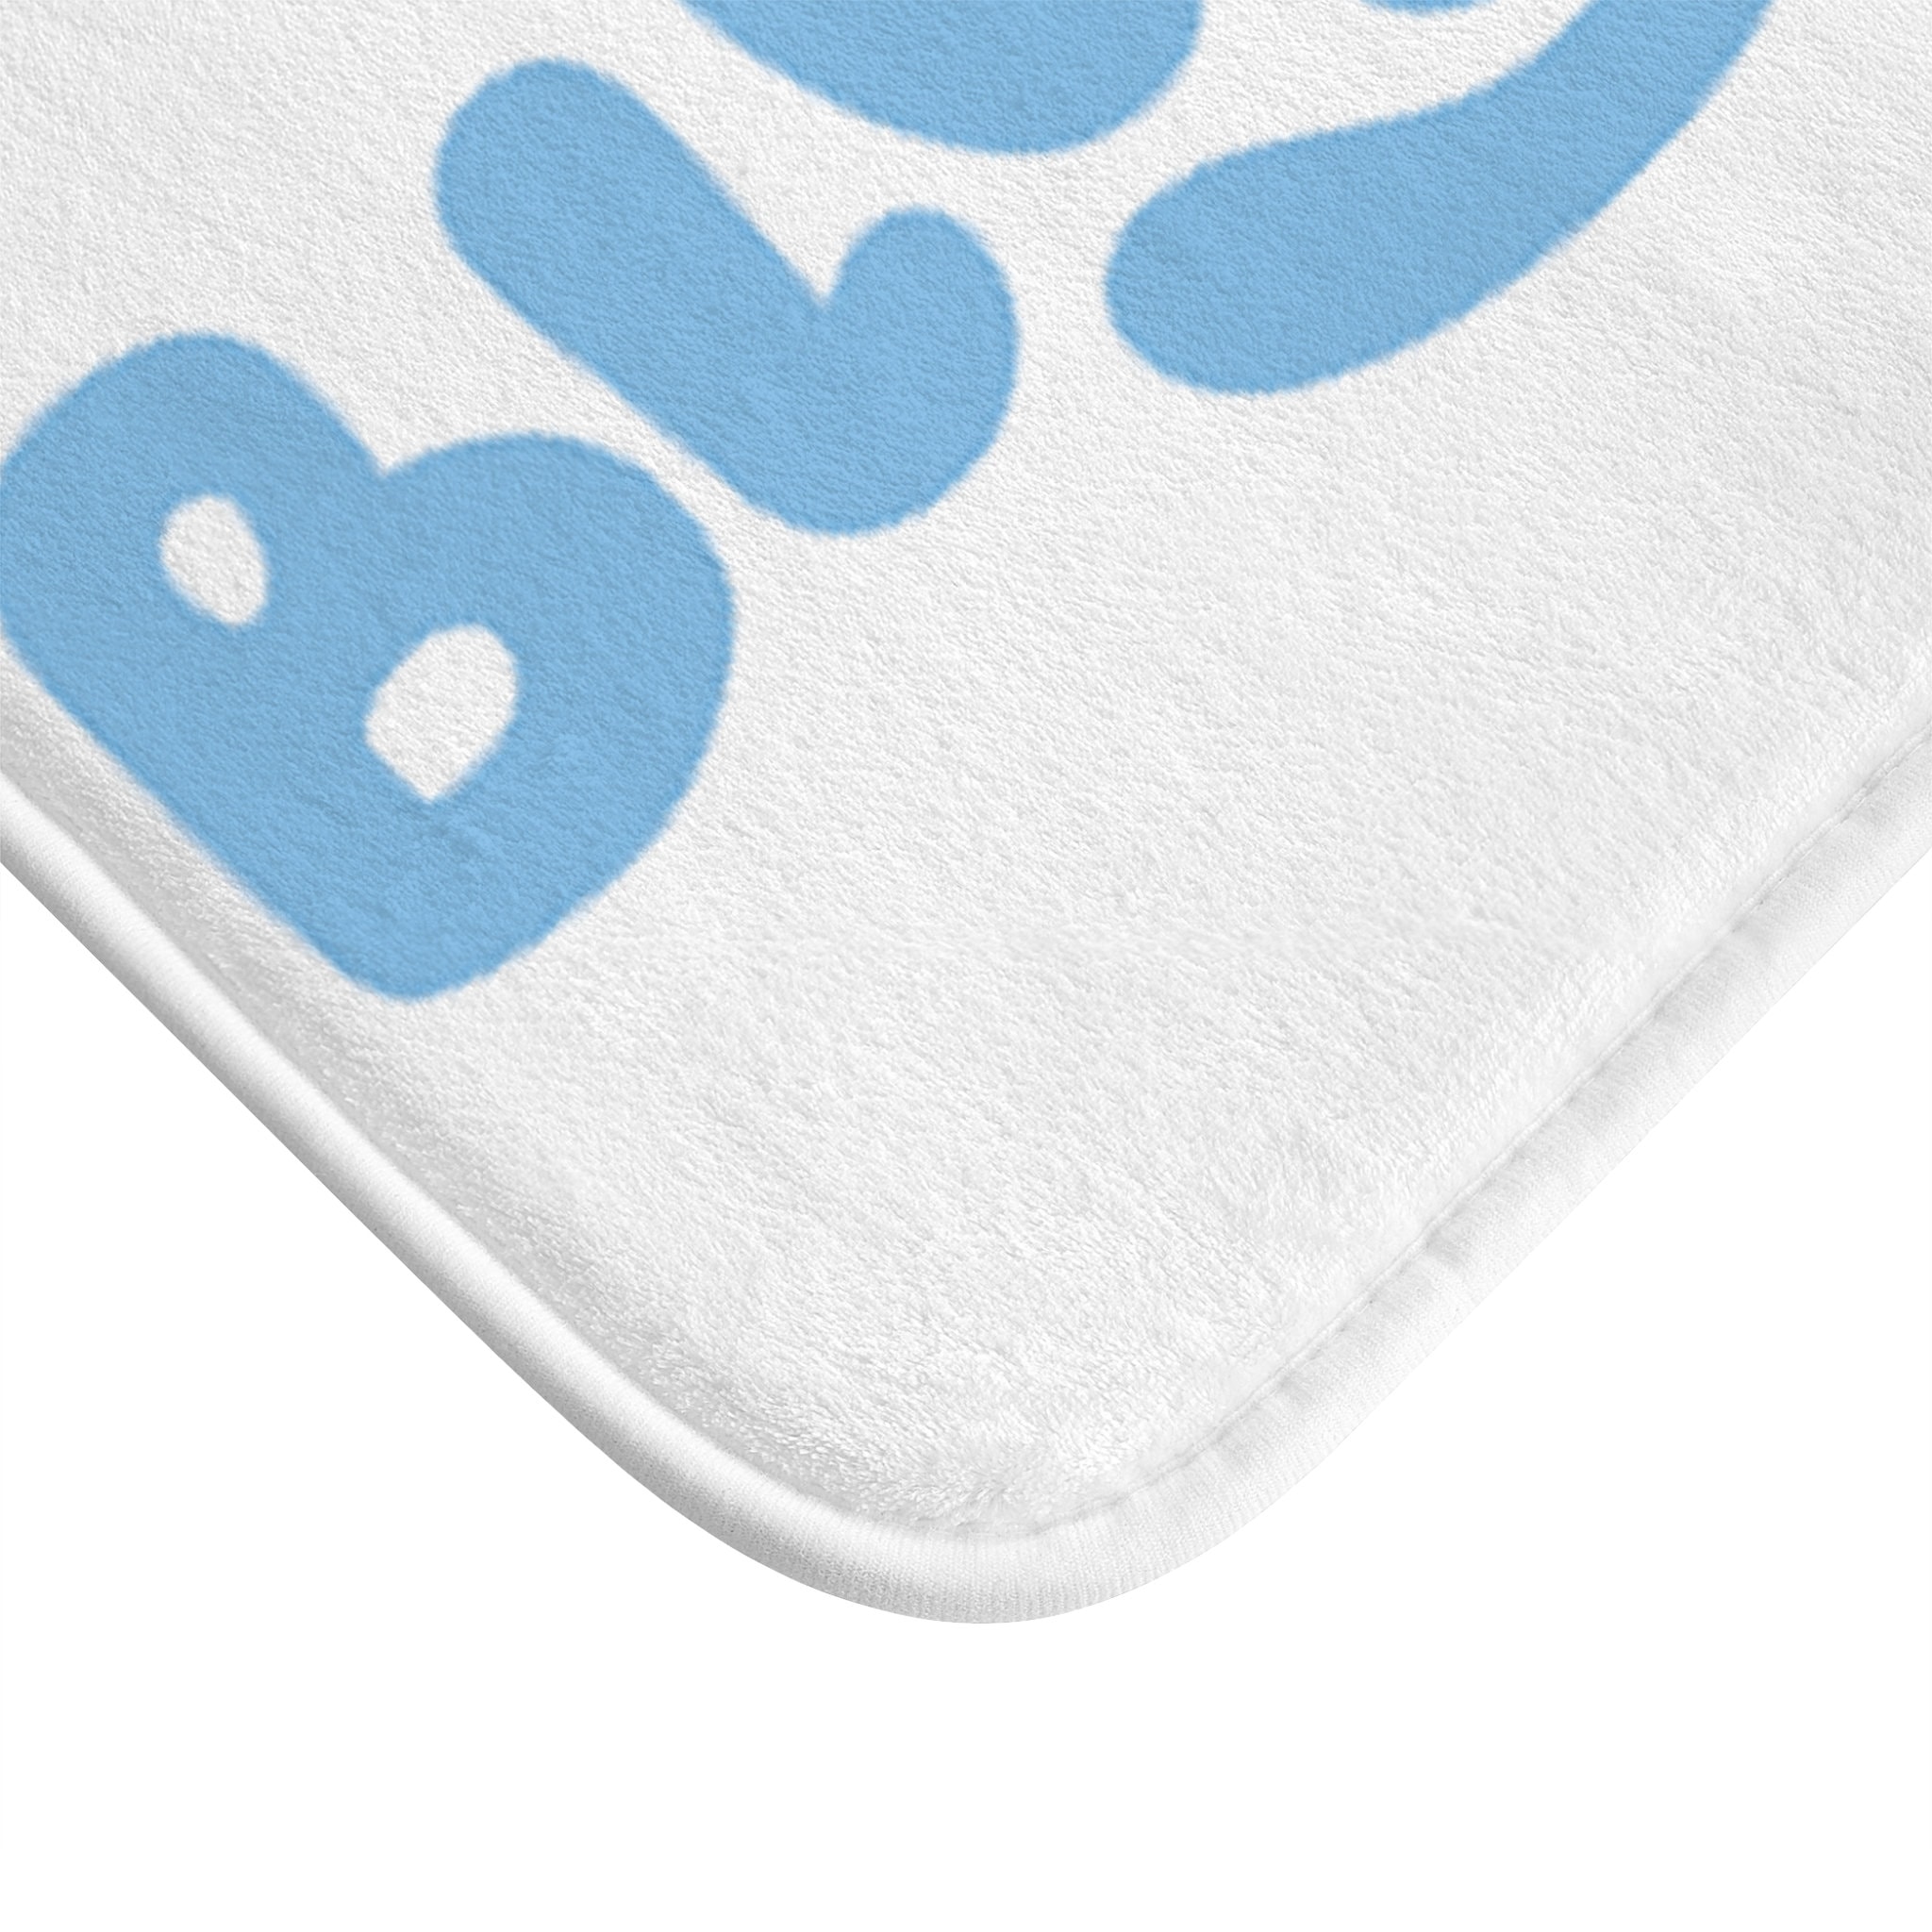 BlueyDad Bath Mat